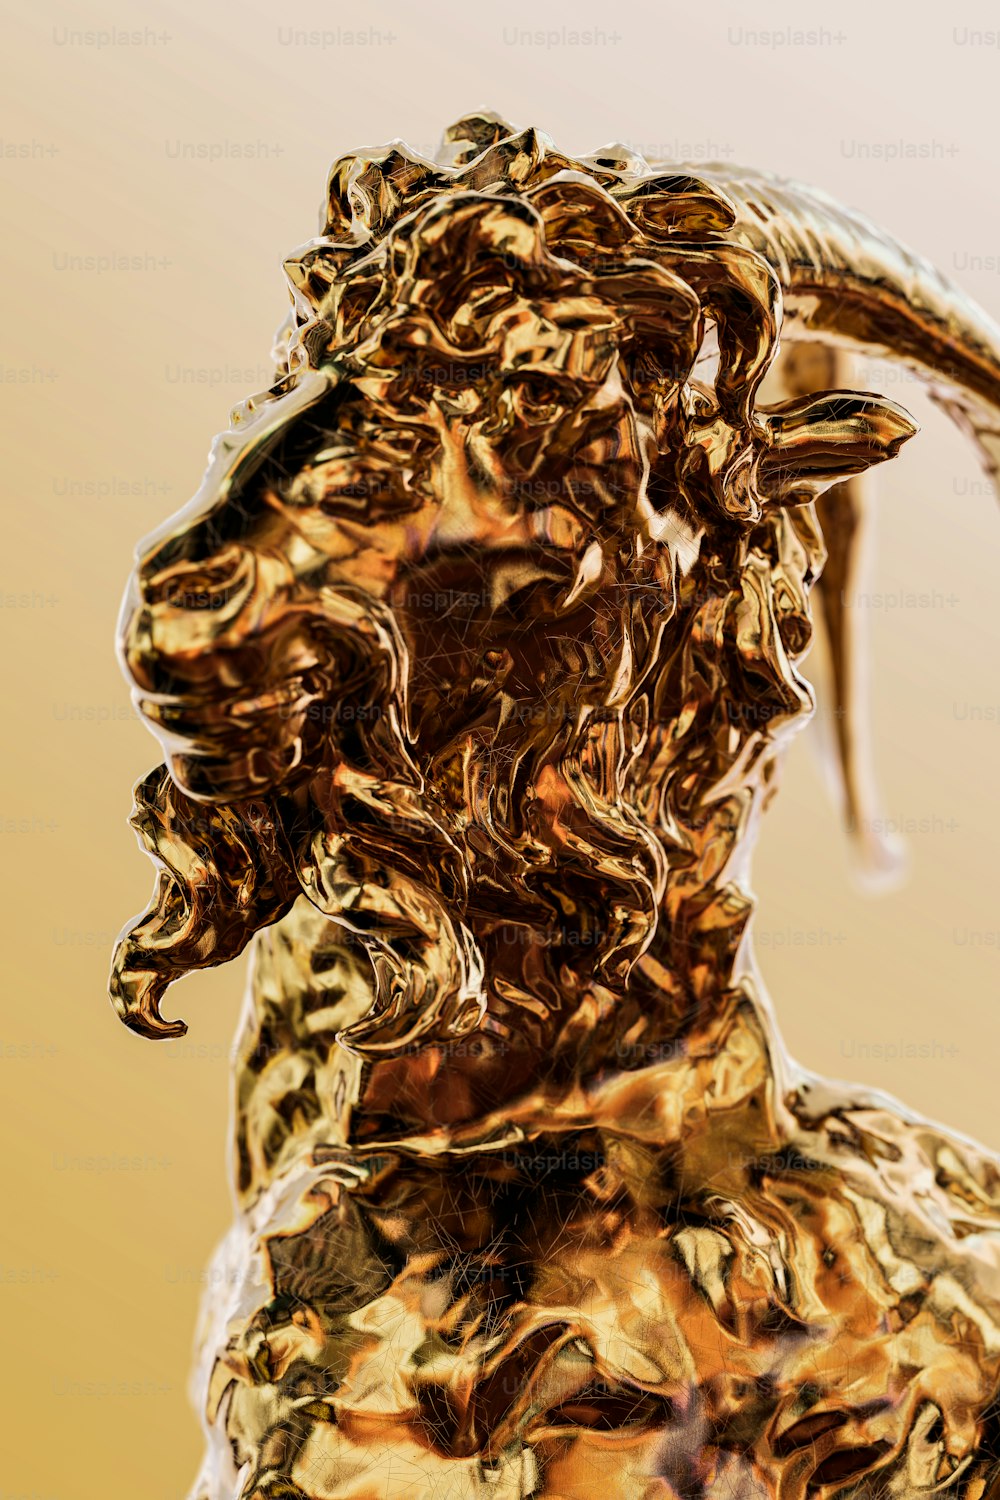 Una estatua dorada de una cabra con cuernos largos